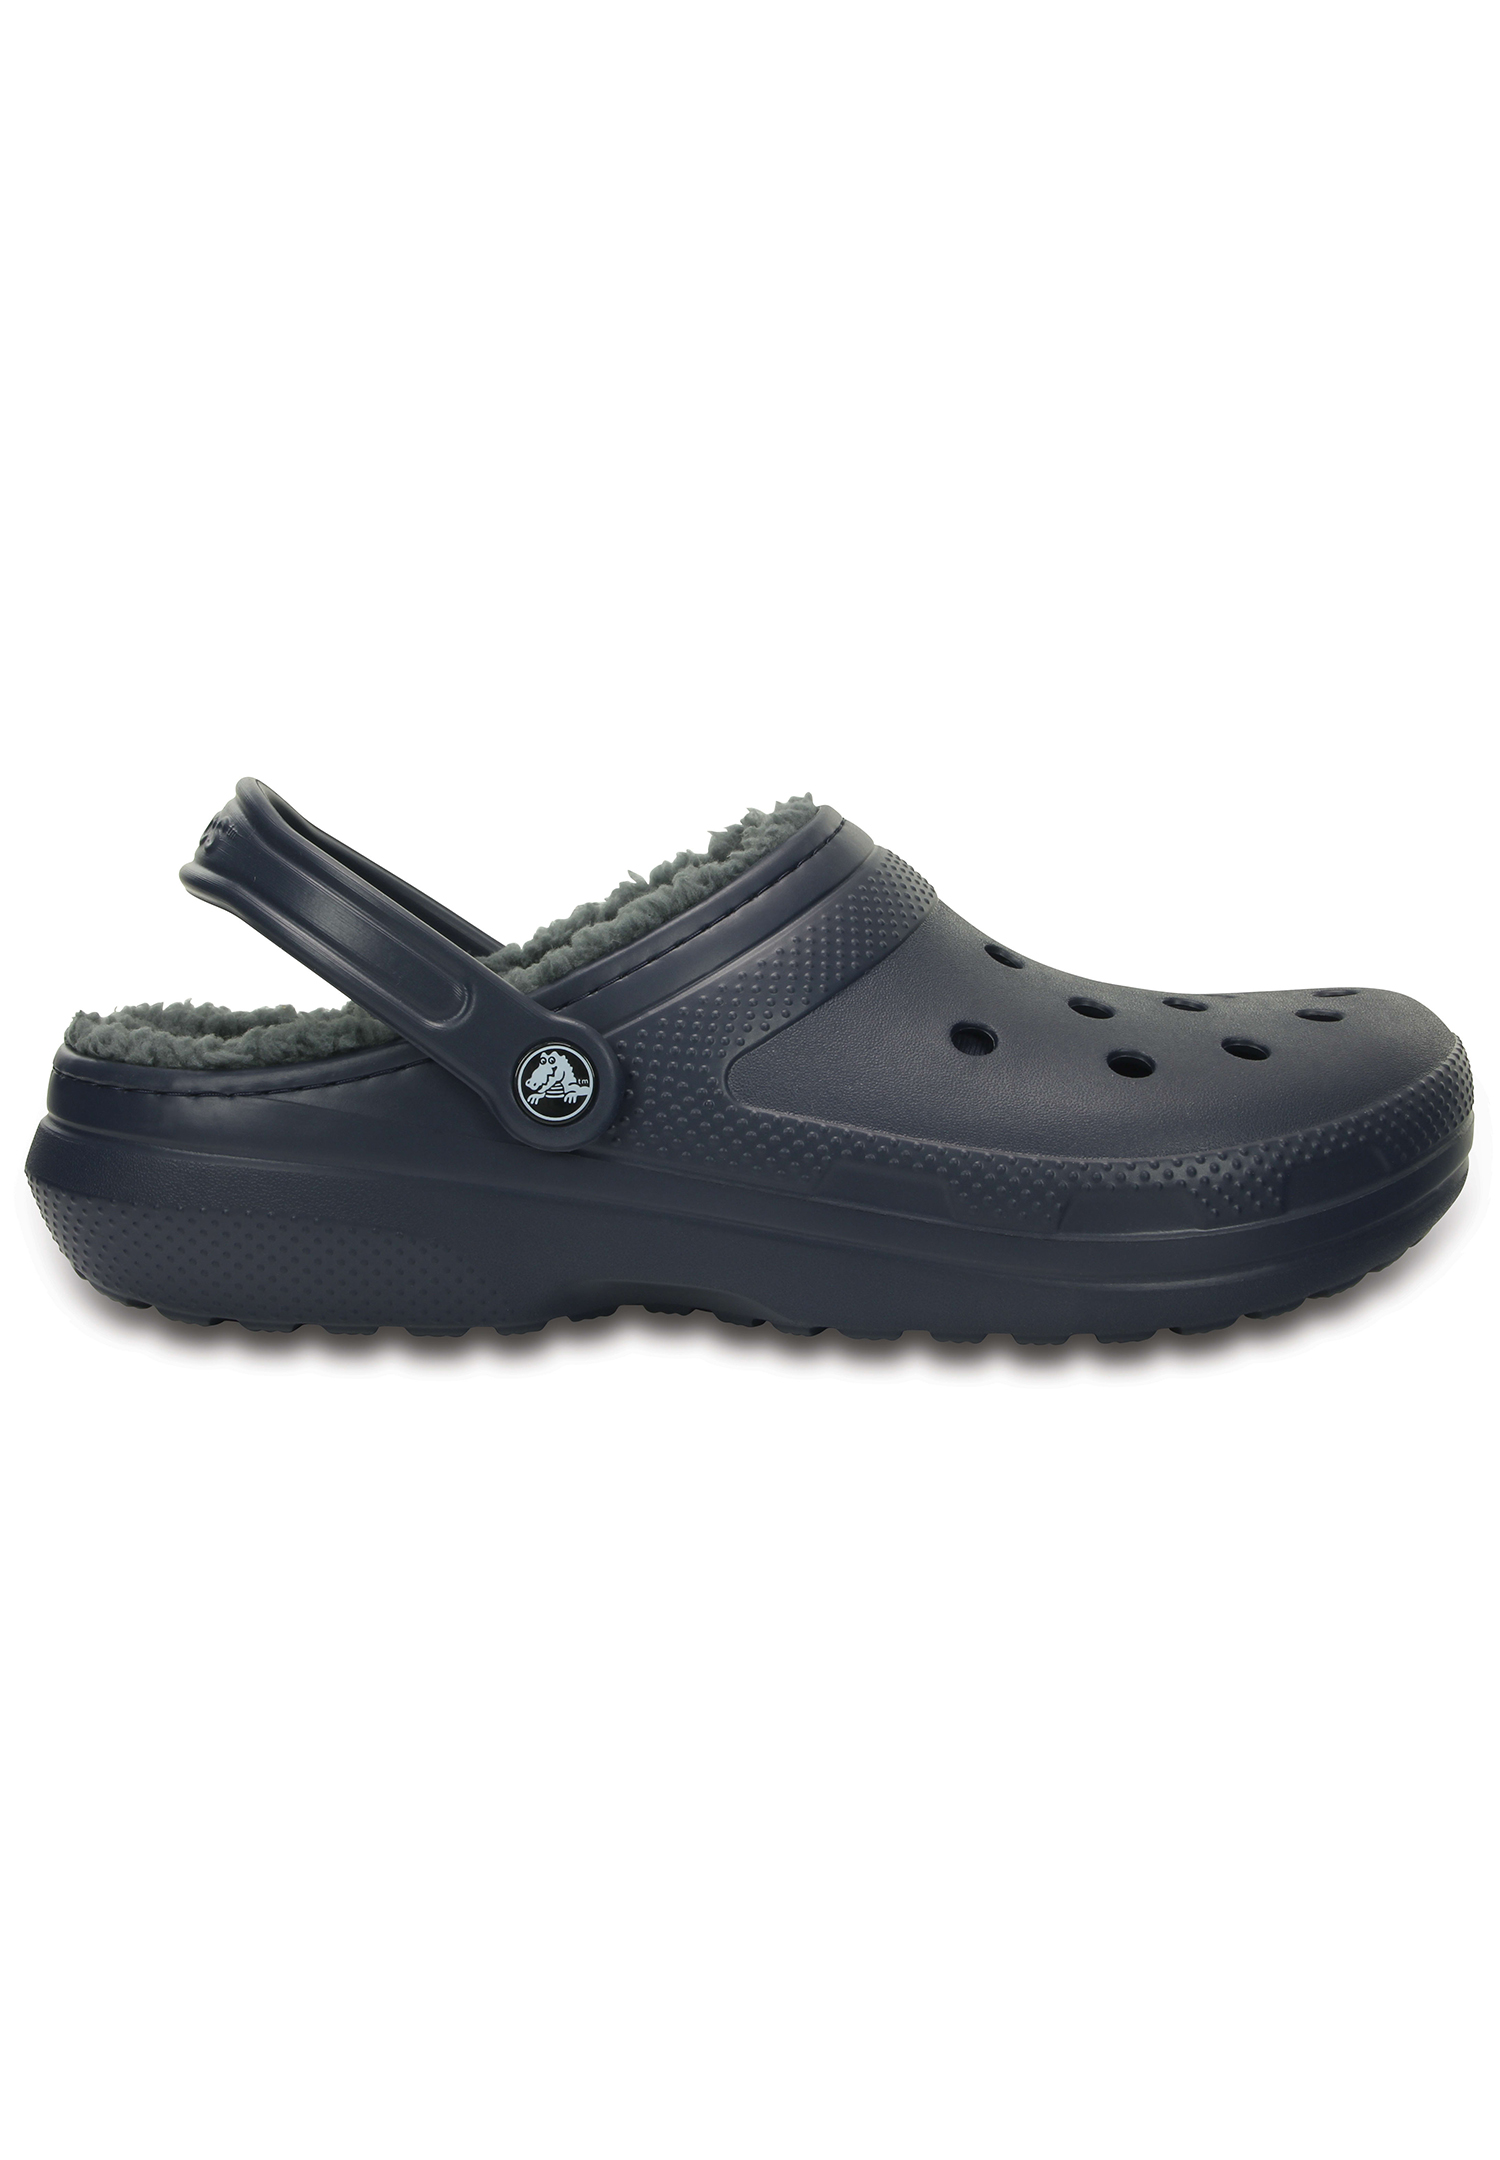 Crocs Classic Clog Unisex Erwachsene Gefüttert Pantoffel Hausschuh 203591-459 blau